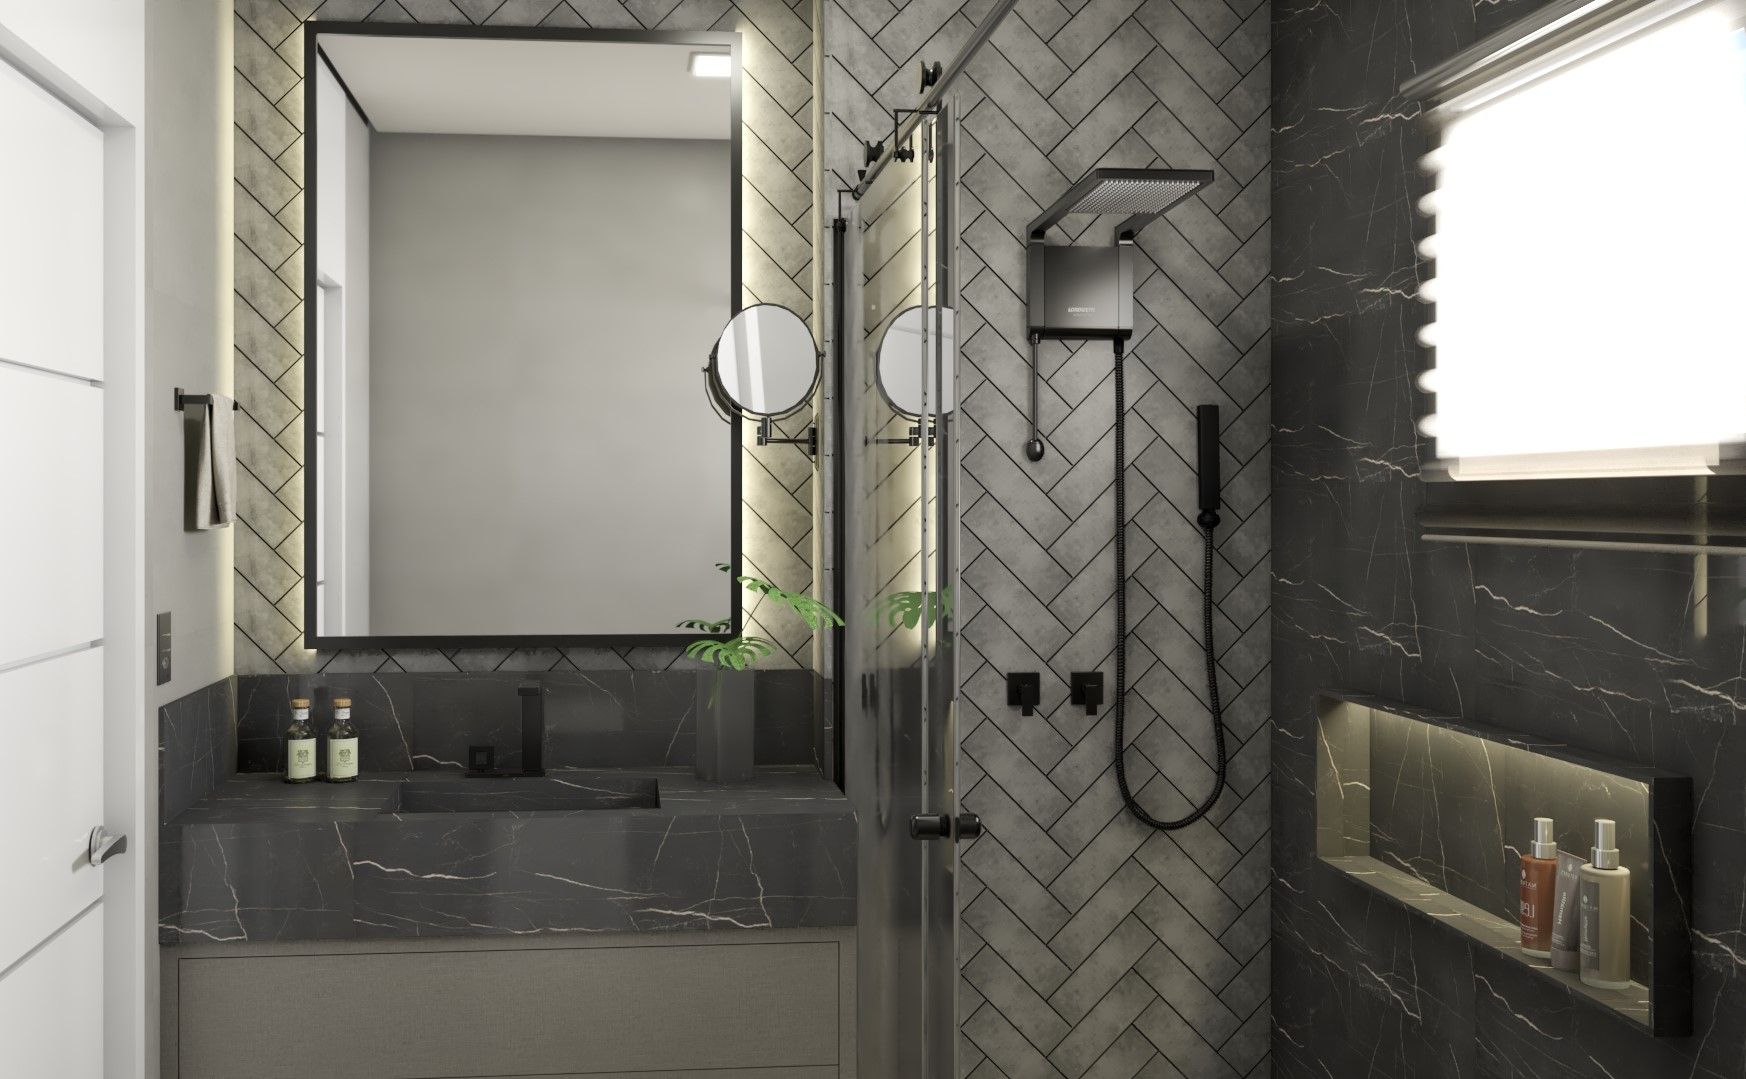 Banheiro|DR AJP ARQUITETOS ASSOCIADOS Banheiros modernos Mármore revestimentos,marmorizados,tijolinho,banheiro,moderno,luxuoso.,Espelhos